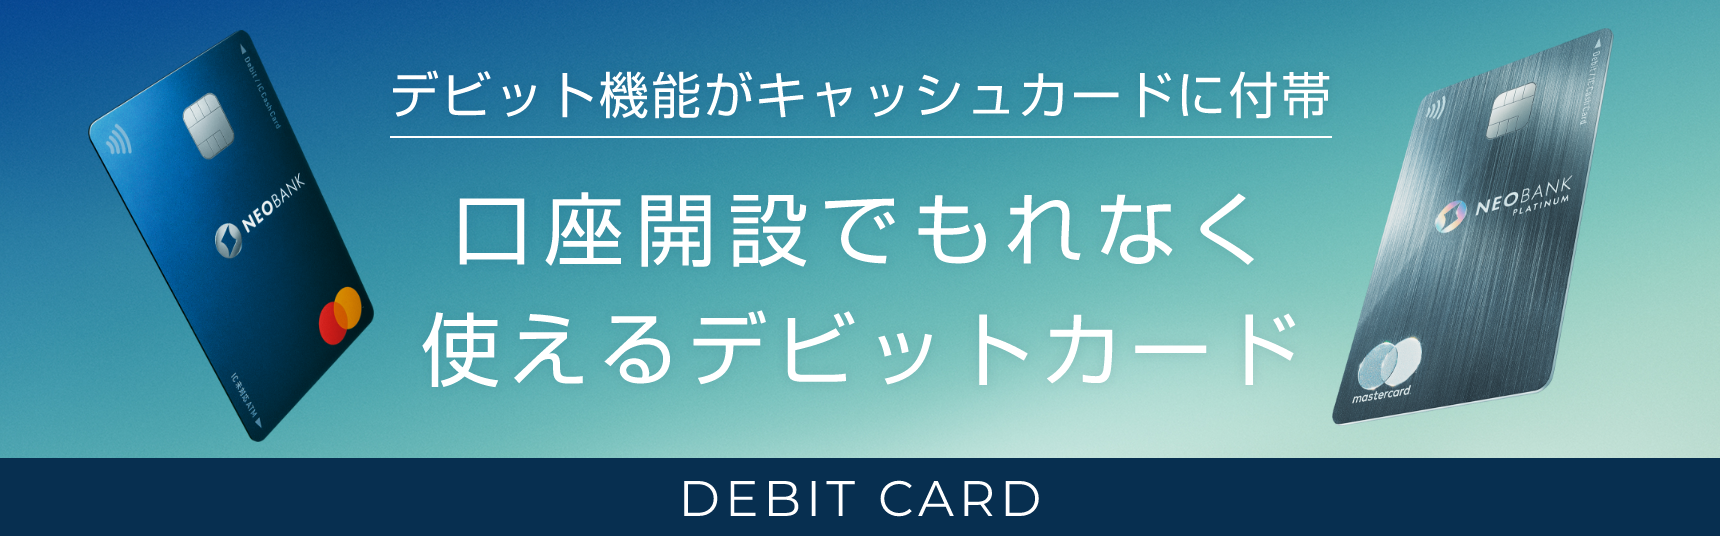 デビット機能がキャッシュカードに付帯 口座開設でもれなく使えるデビットカード